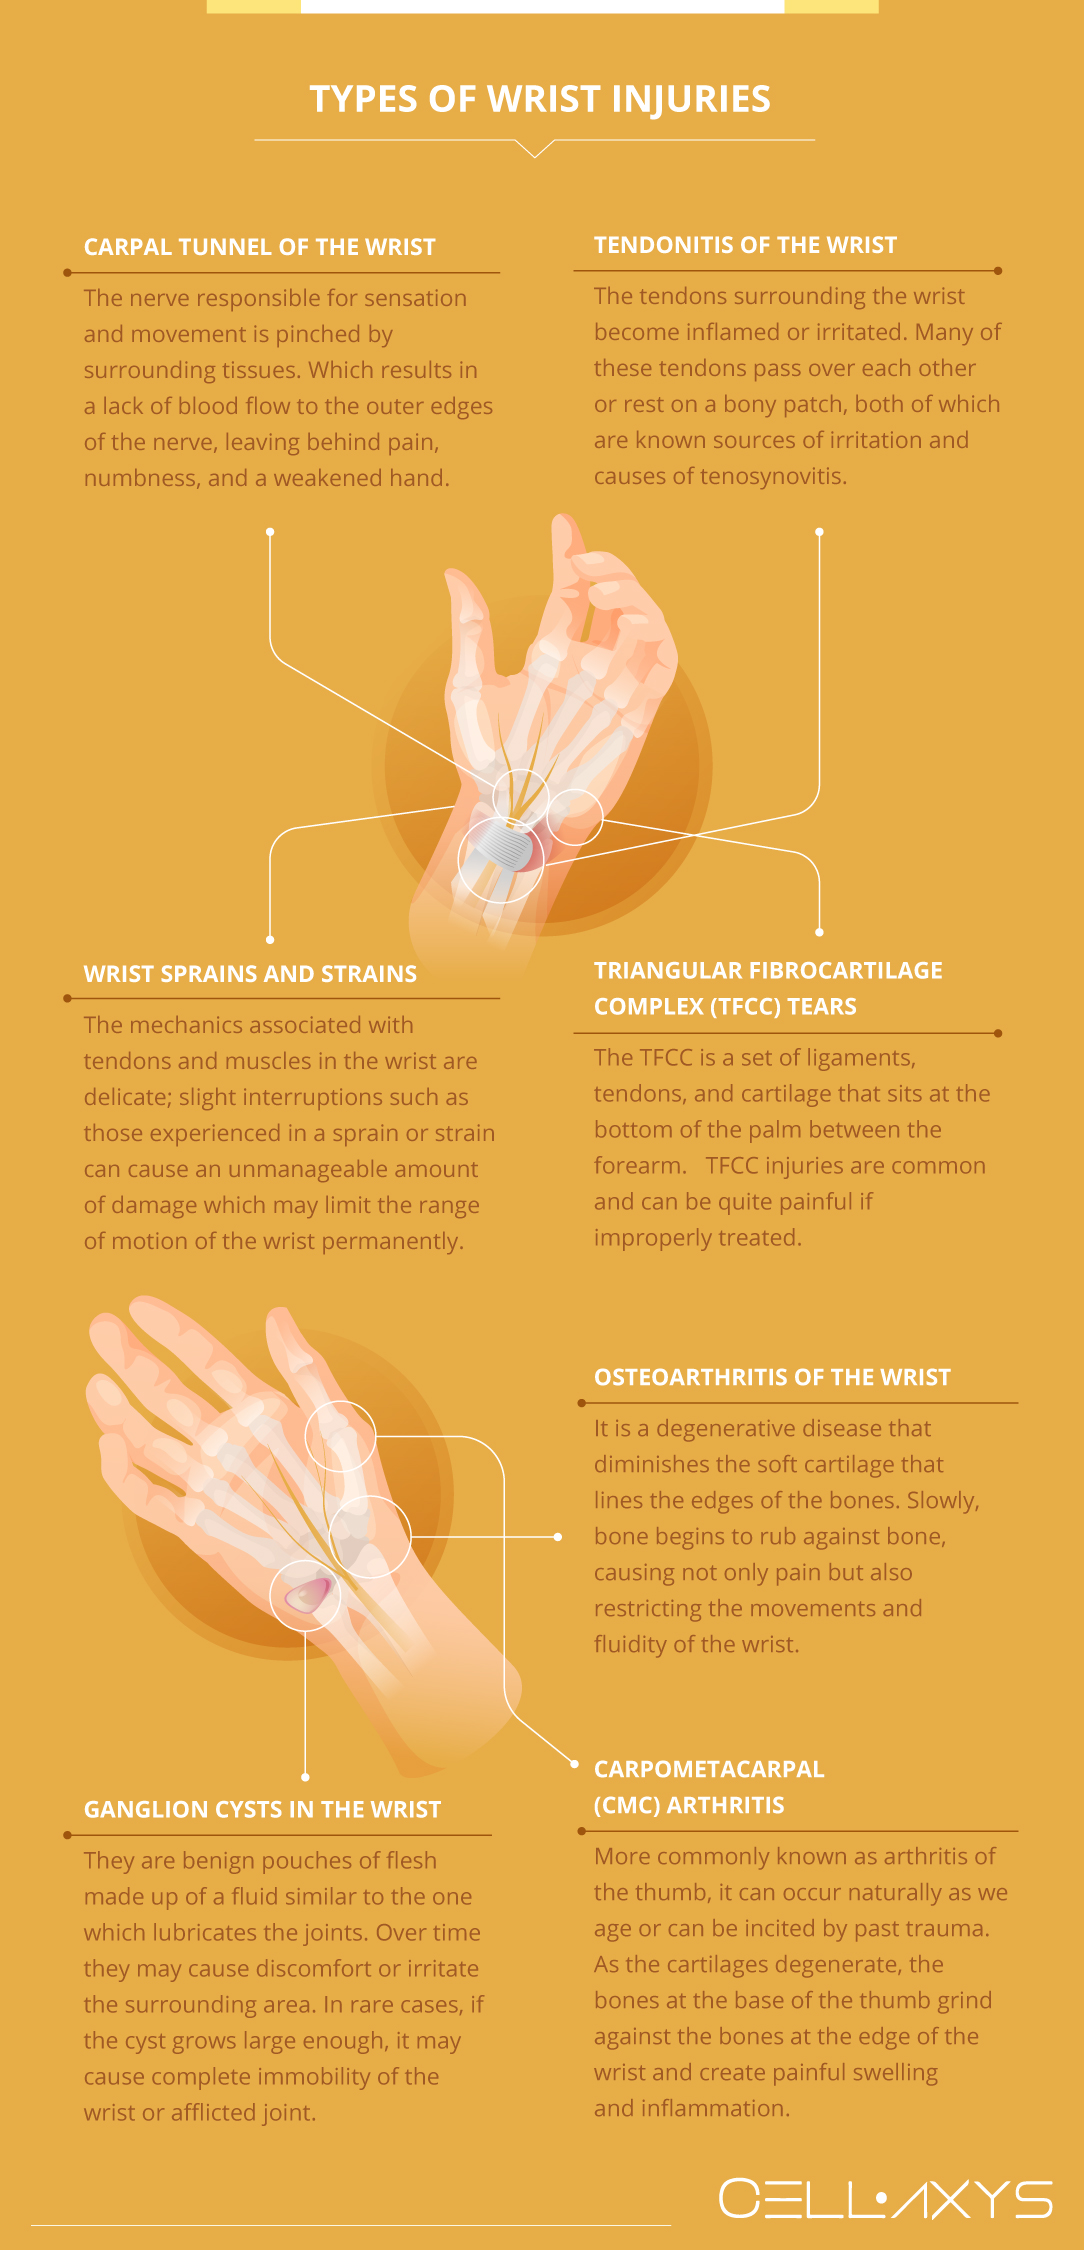 Types of Wrist Injuries